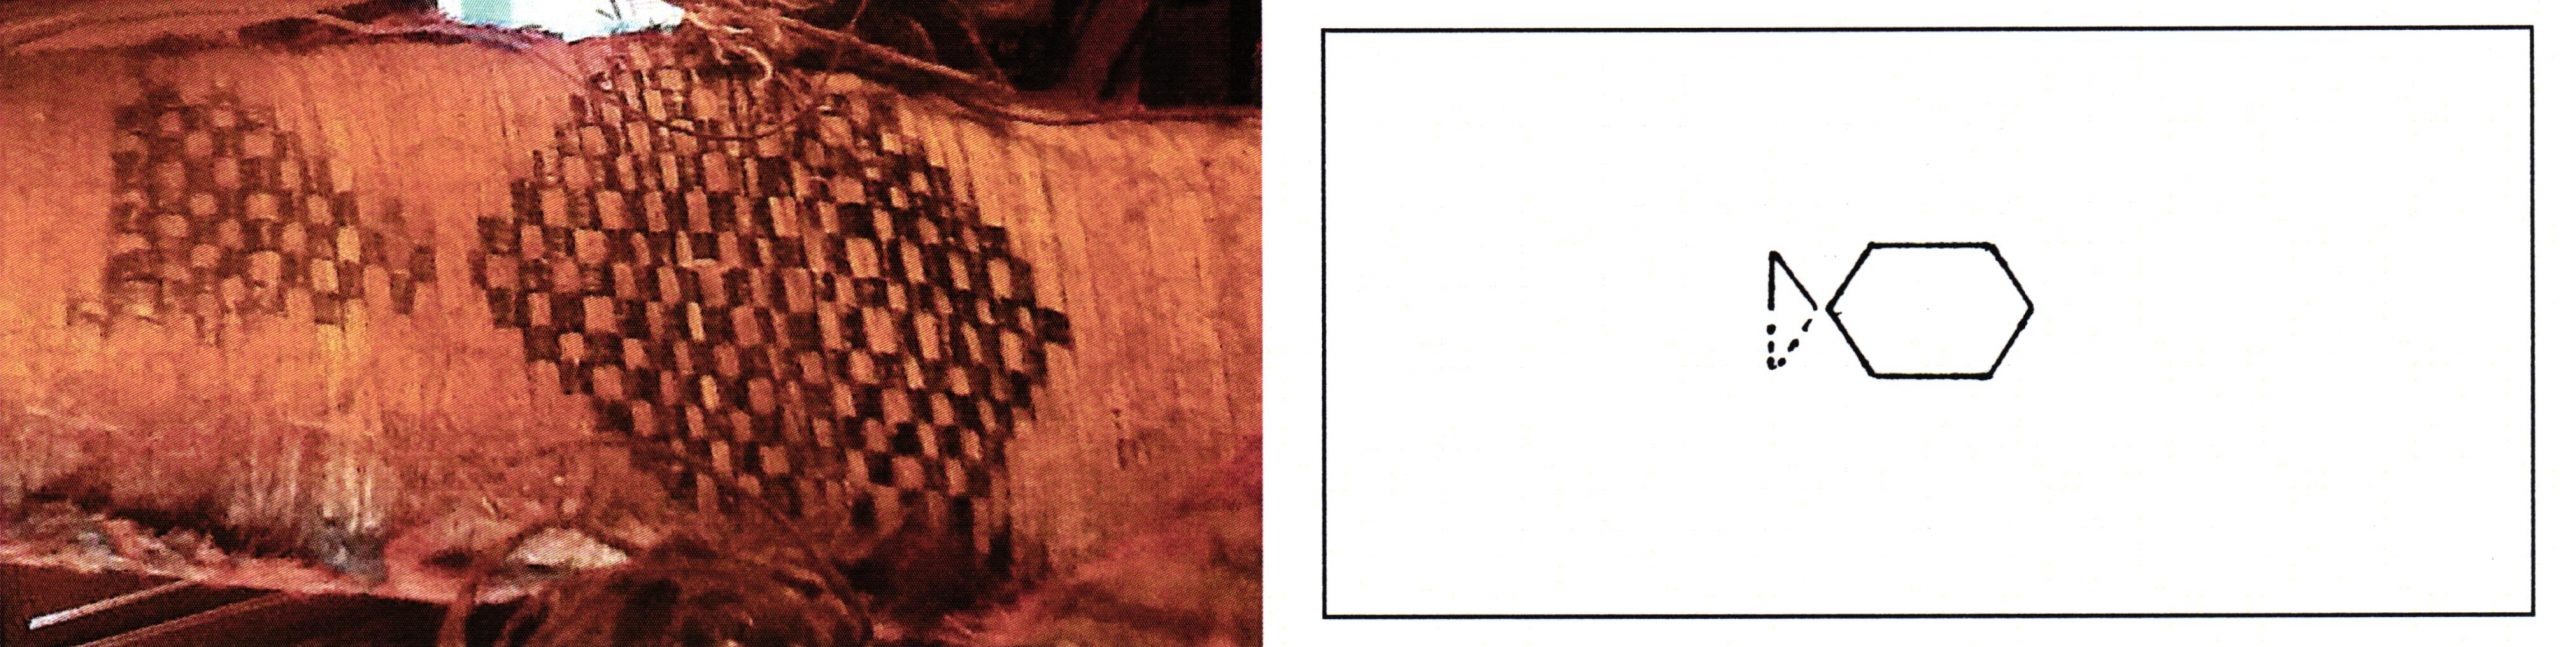 PGS 36,2 (2015) Tafel 41 Abb. 19: Federgeldrolle [EUWU]. Handwerkermarke kurzes Sechseck mit einseitigem Zeichen